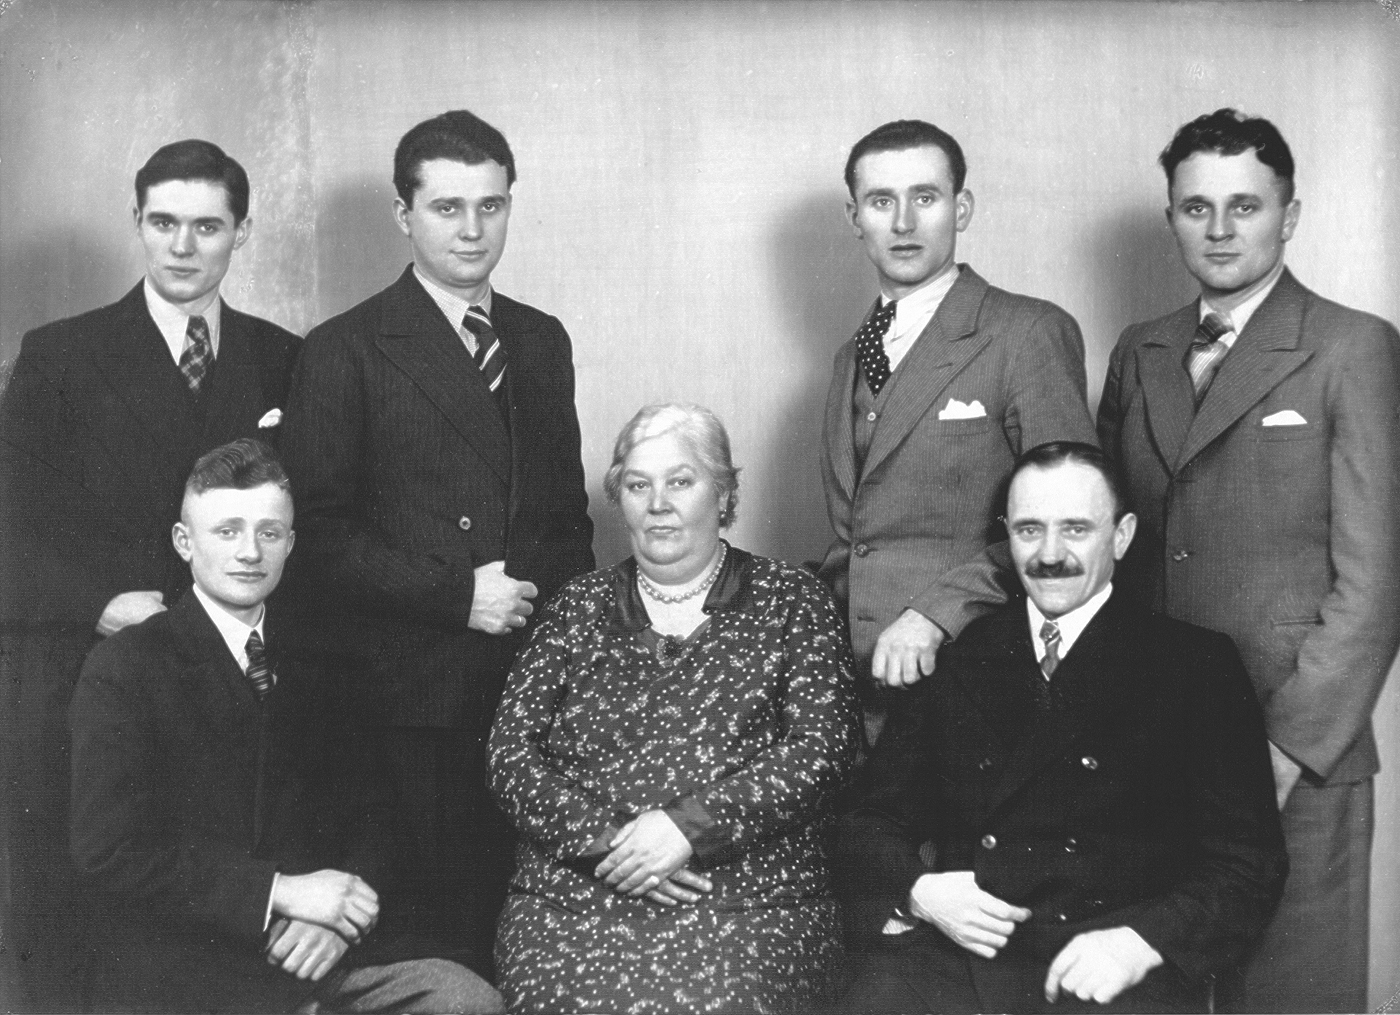 Familie Weise 1936. Stehend von links nach rechts die Geschwister Rudi, Richard, Walter und Kurt Weise, sitzend Karl und seine Eltern Friederike Marie Karoline (geborene Göhre) und Rudolf Richard Weise.